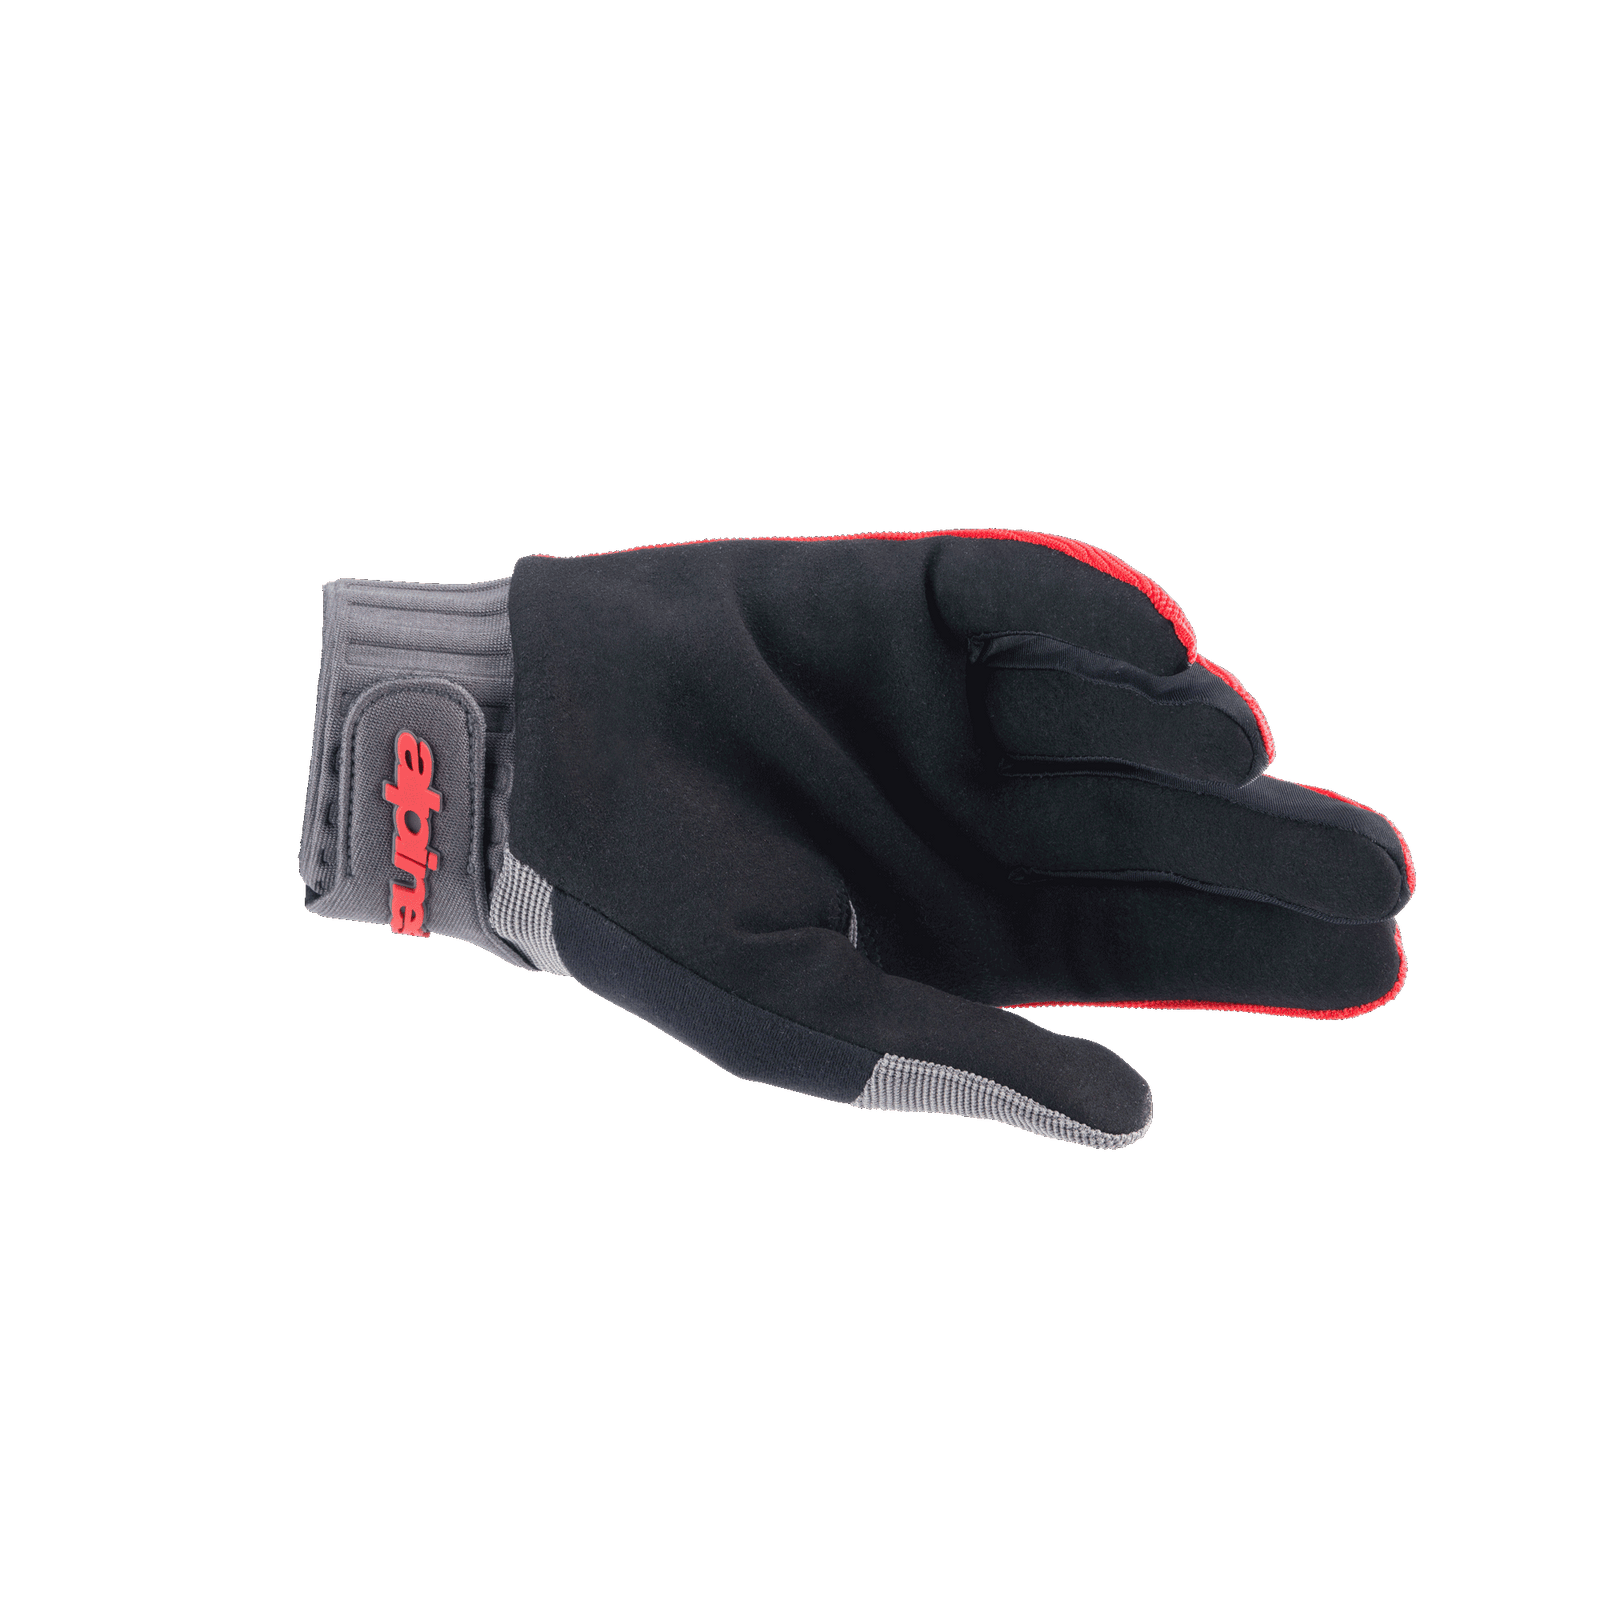 A-Dura Handschuhe